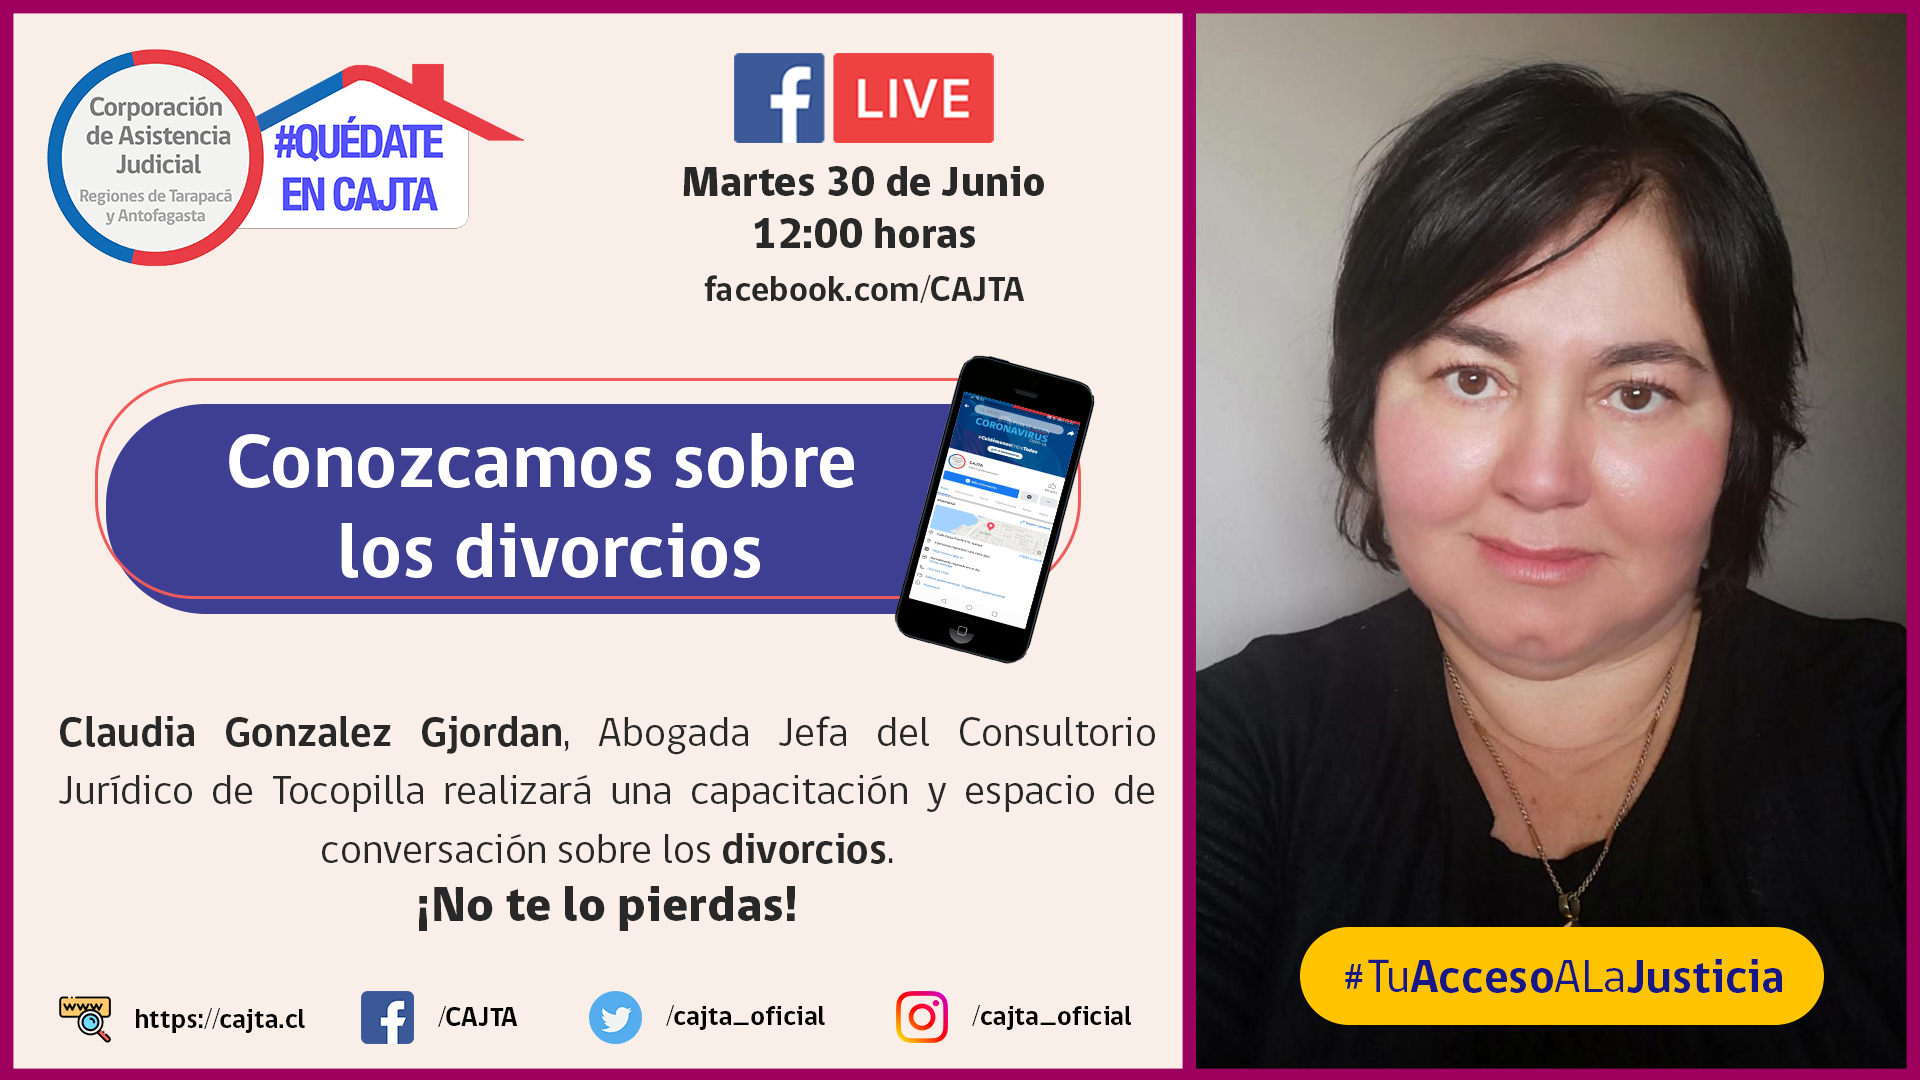 Invitamos a nuestro Facebook Live para el martes 30 de junio a las 12:00 horas, hablaremos sobre el DIVORCIO